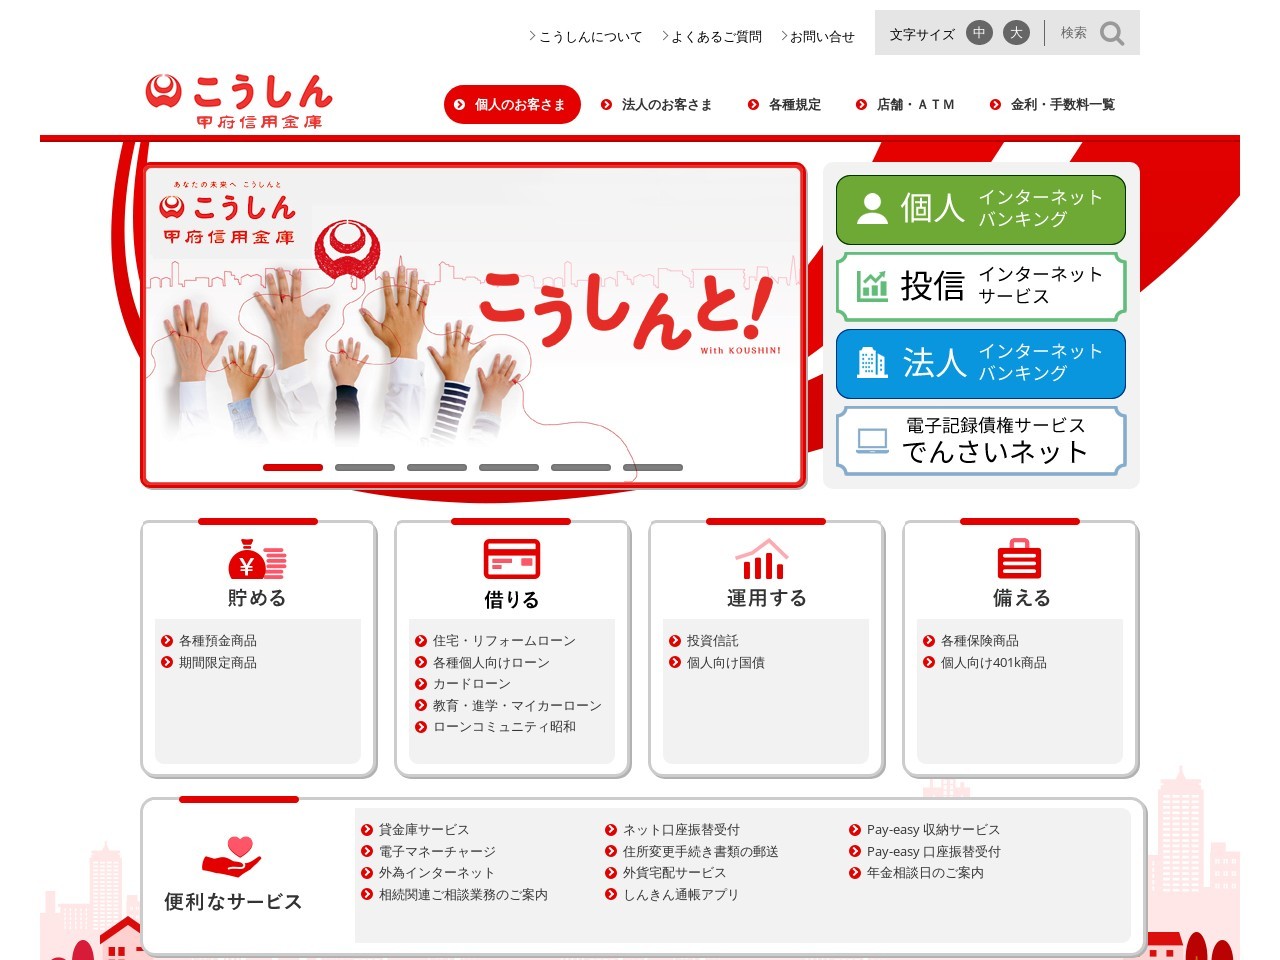 甲府信用金庫のクチコミ・評判とホームページ